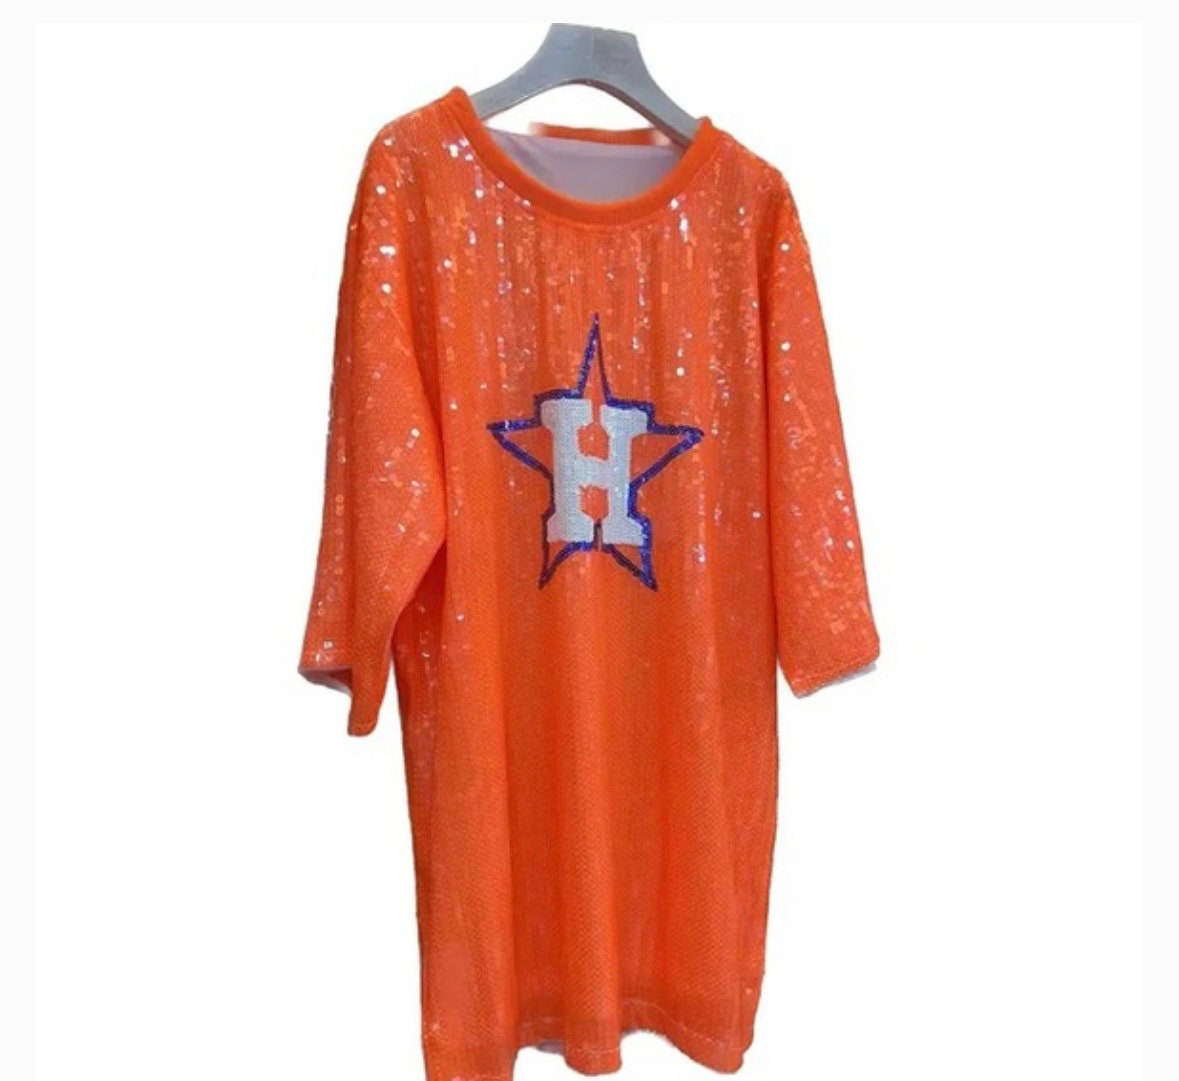 Houston Astros Jersey Bling Rhinestone T-shirt V-neck